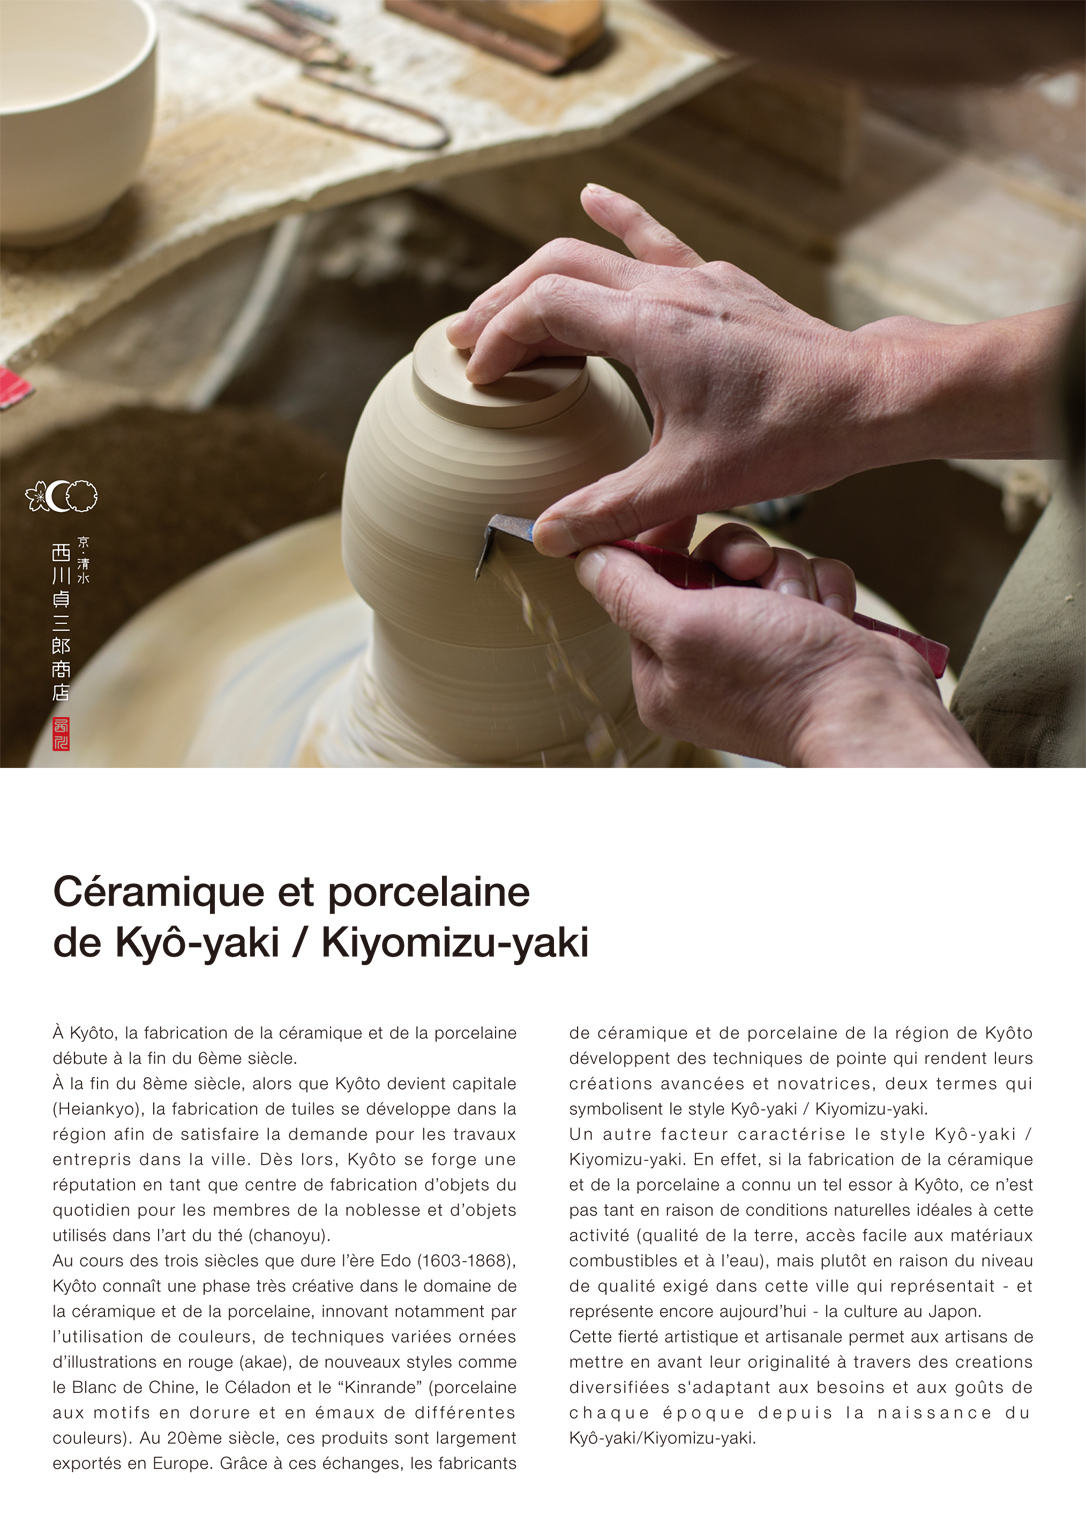 Porcelaine de Kiyomizu et cuisine japonaise, Exhibition Design